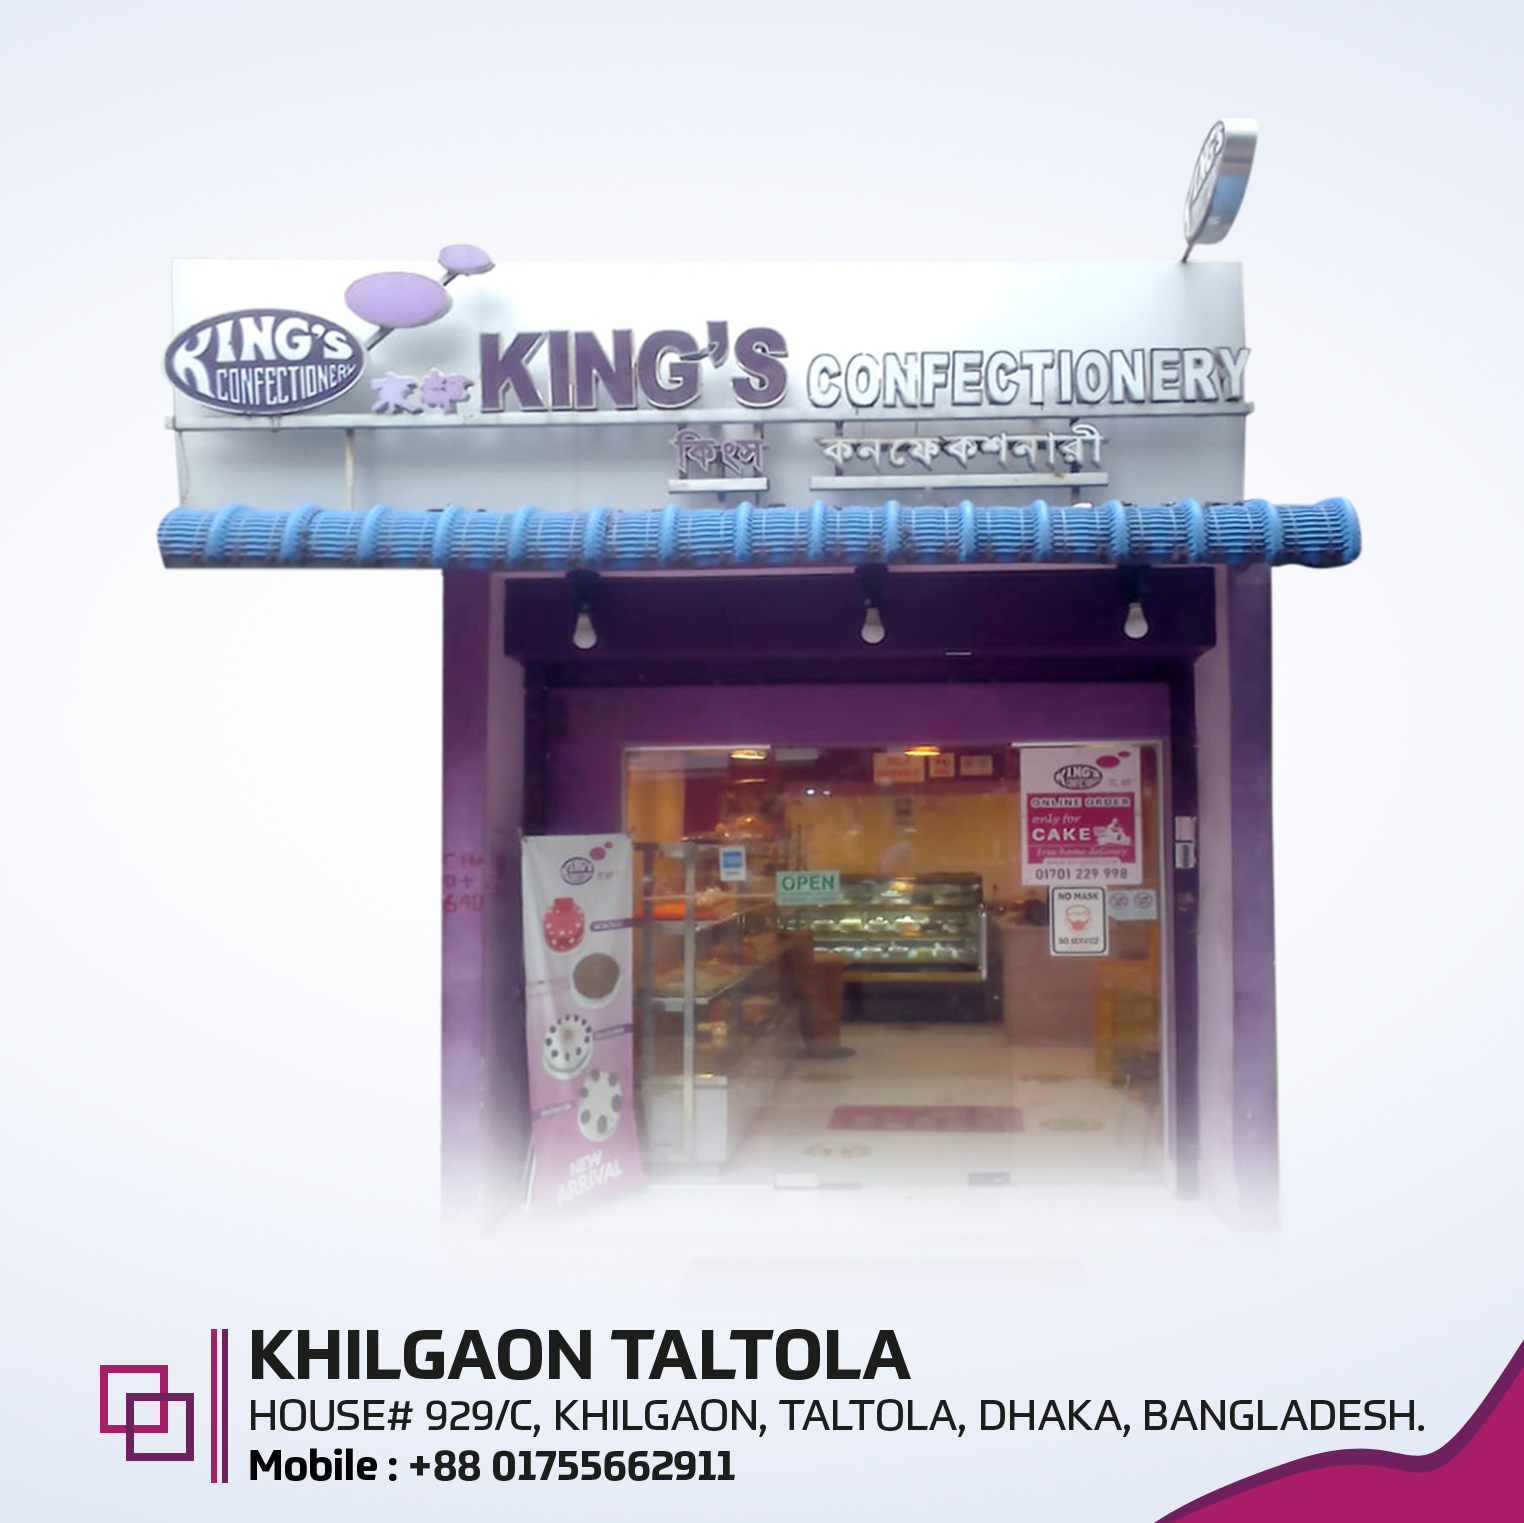 King's Confectionery, 
Khilgaon